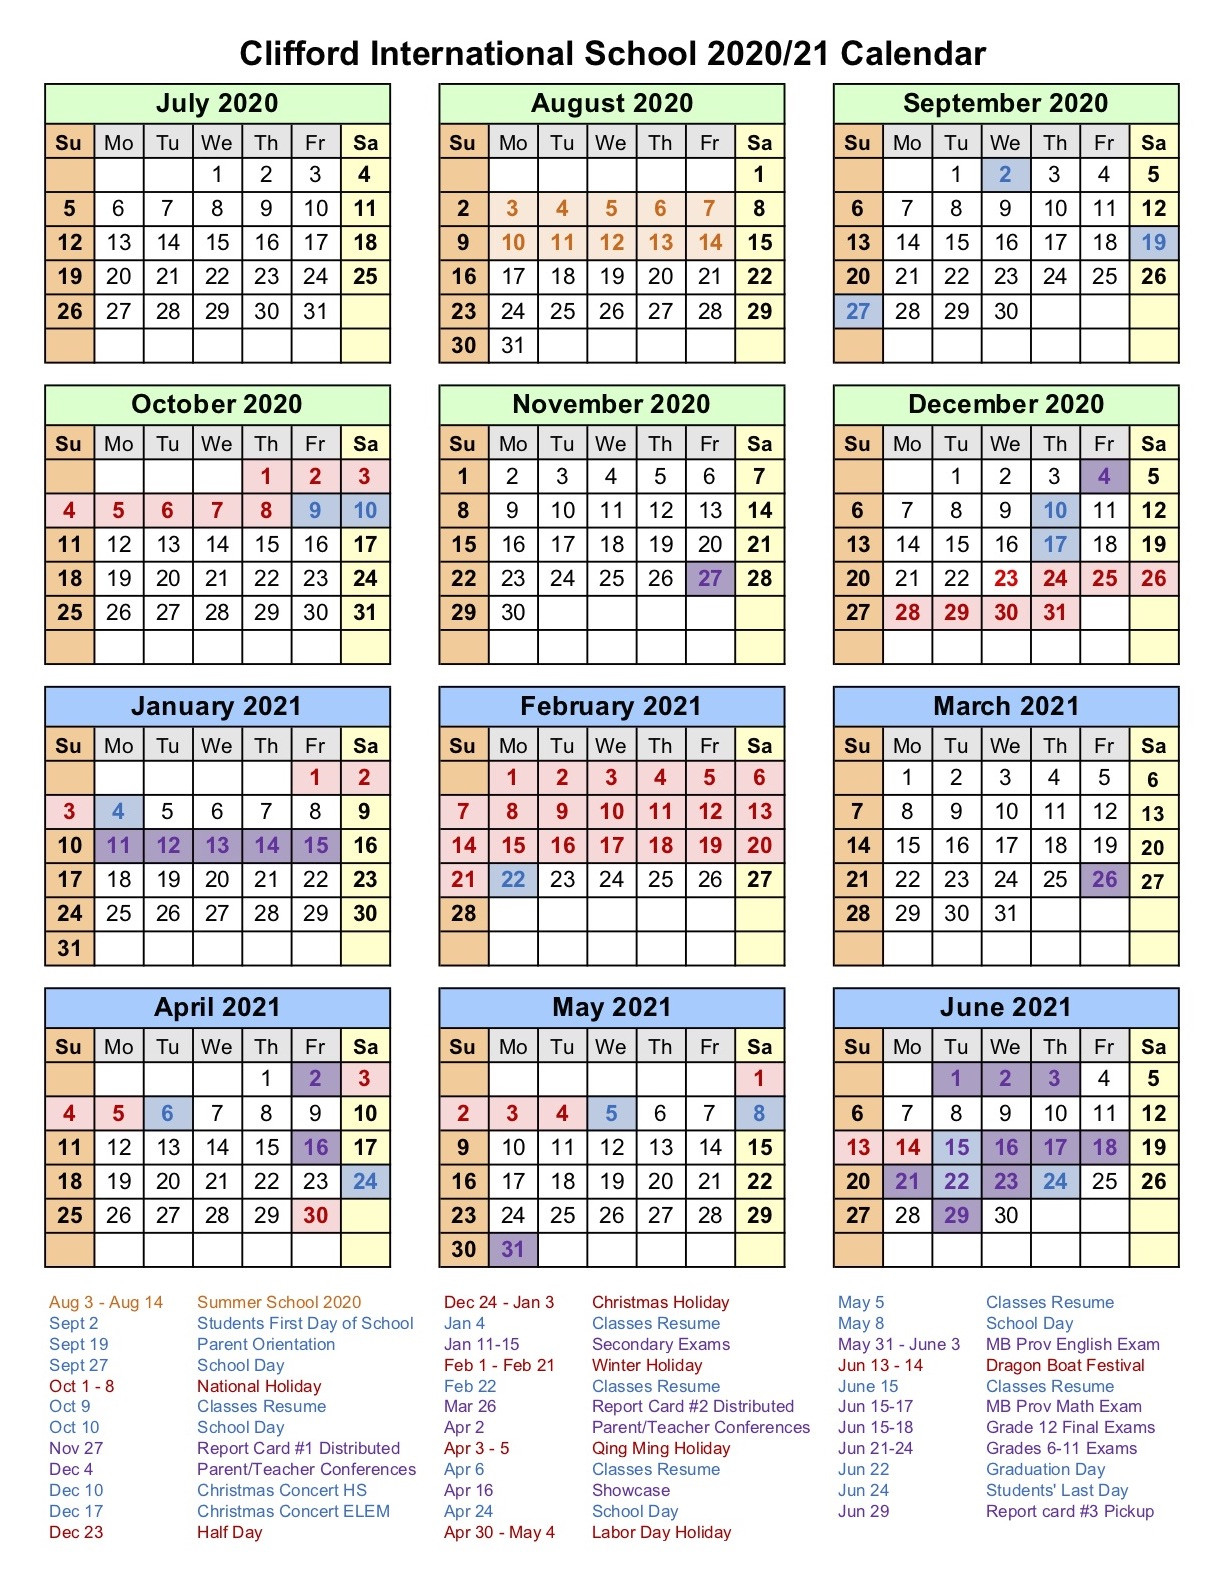 Cis Secondary Calendar 2020-2021 - Official Website Of-International School Holidays For 2021